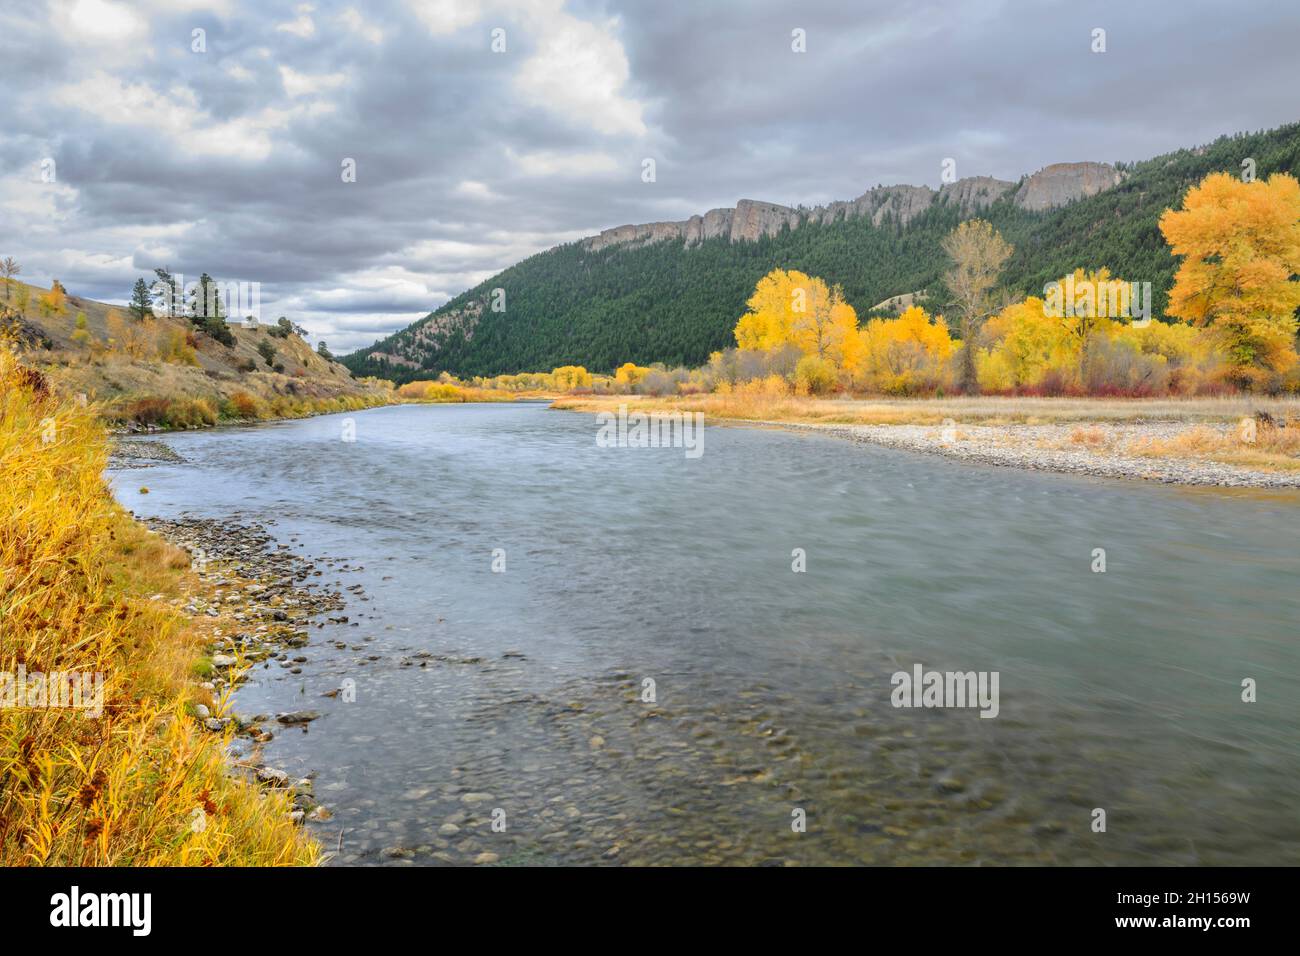 Colores de otoño y acantilados a lo largo del río Clark Fork cerca de Drummond, Montana Foto de stock